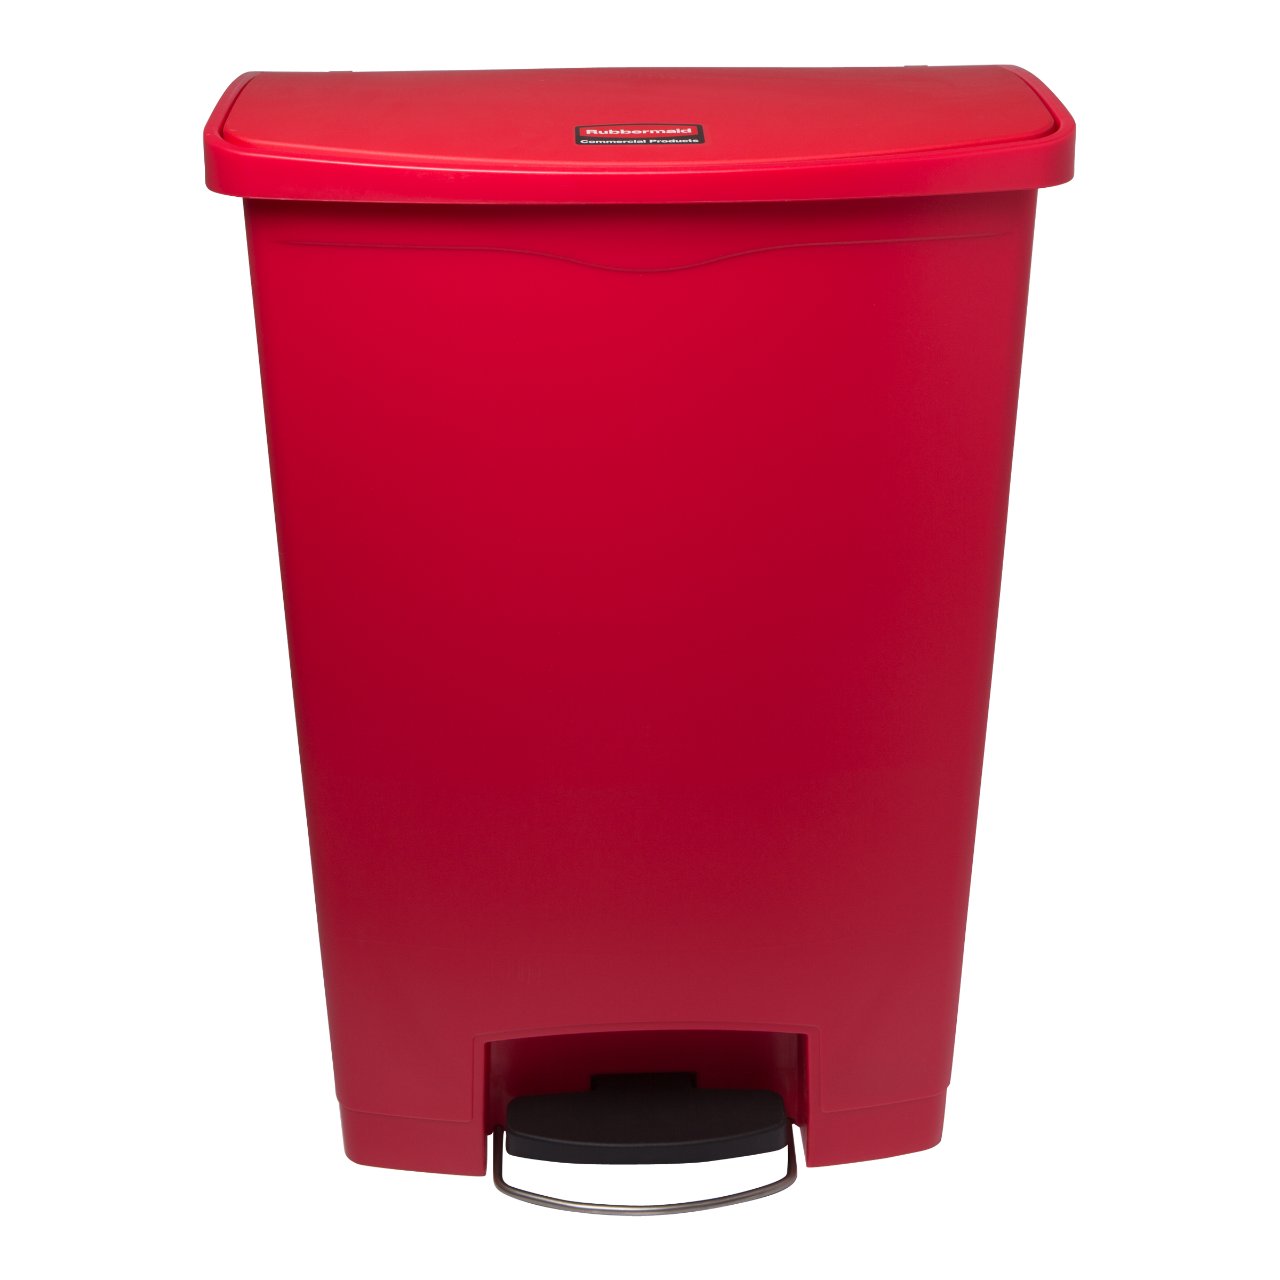 Snel achterstalligheid Bloemlezing Rubbermaid Afvalbak rood 90 liter Doos | Sligro.nl